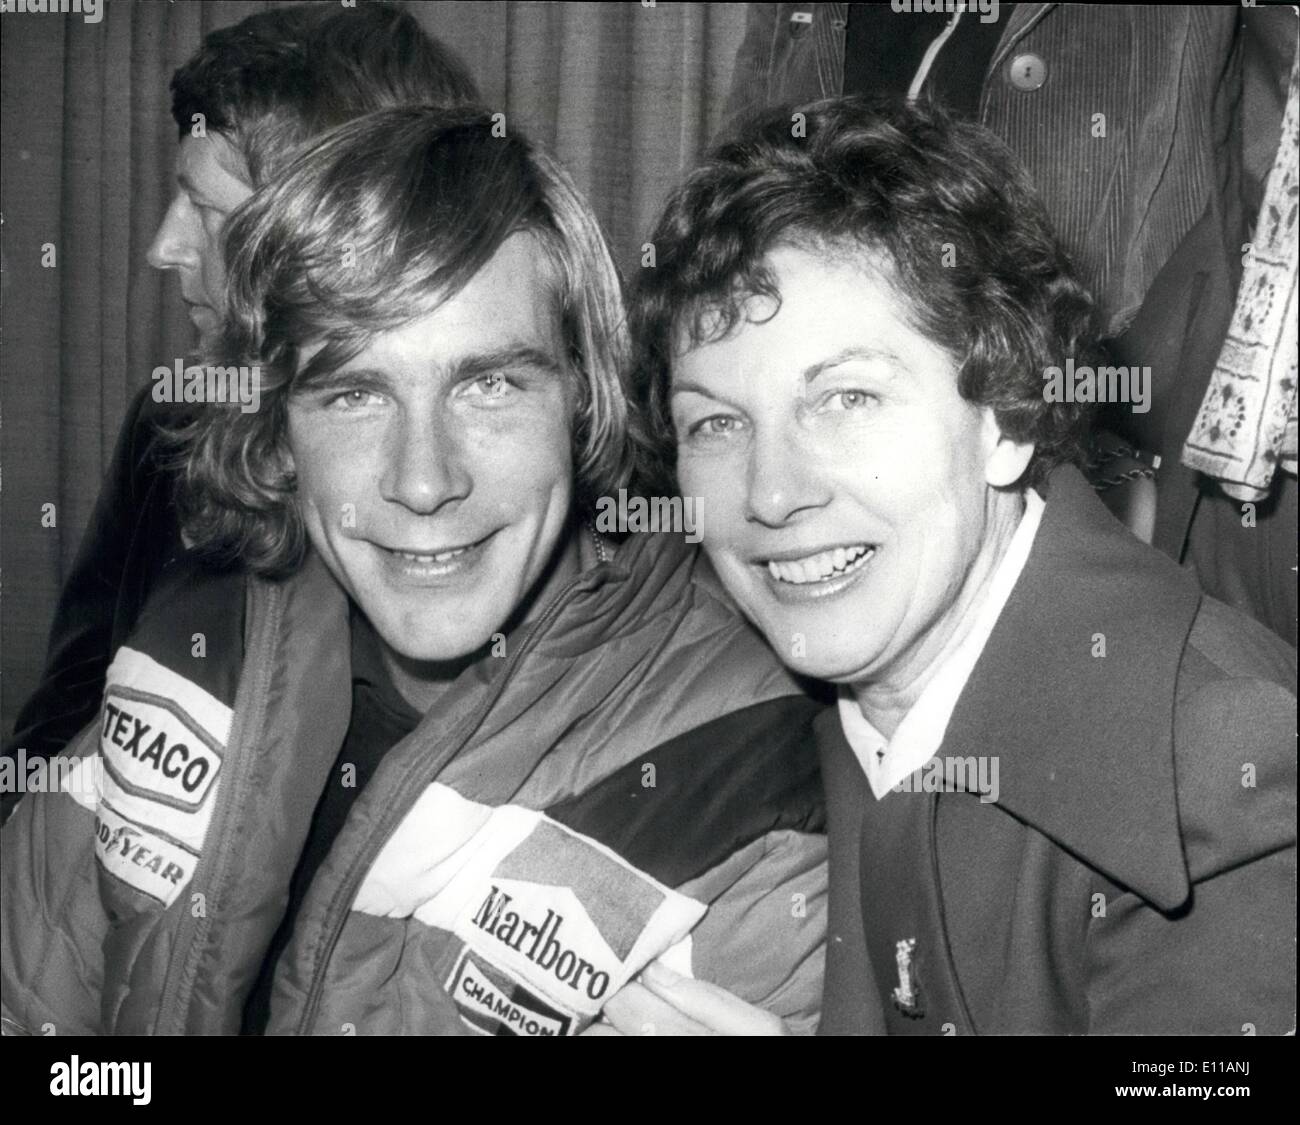 Ottobre 10, 1976 - World Motor Racing campione James Hunt arriva a casa dopo il suo successo nel Gran Premio del Giappone: Gran Bretagna il world motor racing campione, James Hunt, volò in aeroporto di Heathrow oggi con un grande benvenuto dalla sua famiglia e la sua fidanzata, l'attrice Jane Birbeck. Egli è stato acclamato dalla folla come egli ha lasciato i velivoli a getto che ha volato in da Tokyo di oggi. James è diventato campione del mondo domenica quando ha finito terzo nel Gran Premio del Giappone. Il campione dethrowned Niki Lauda ritirato solo dopo il completamento di un giro Foto Stock